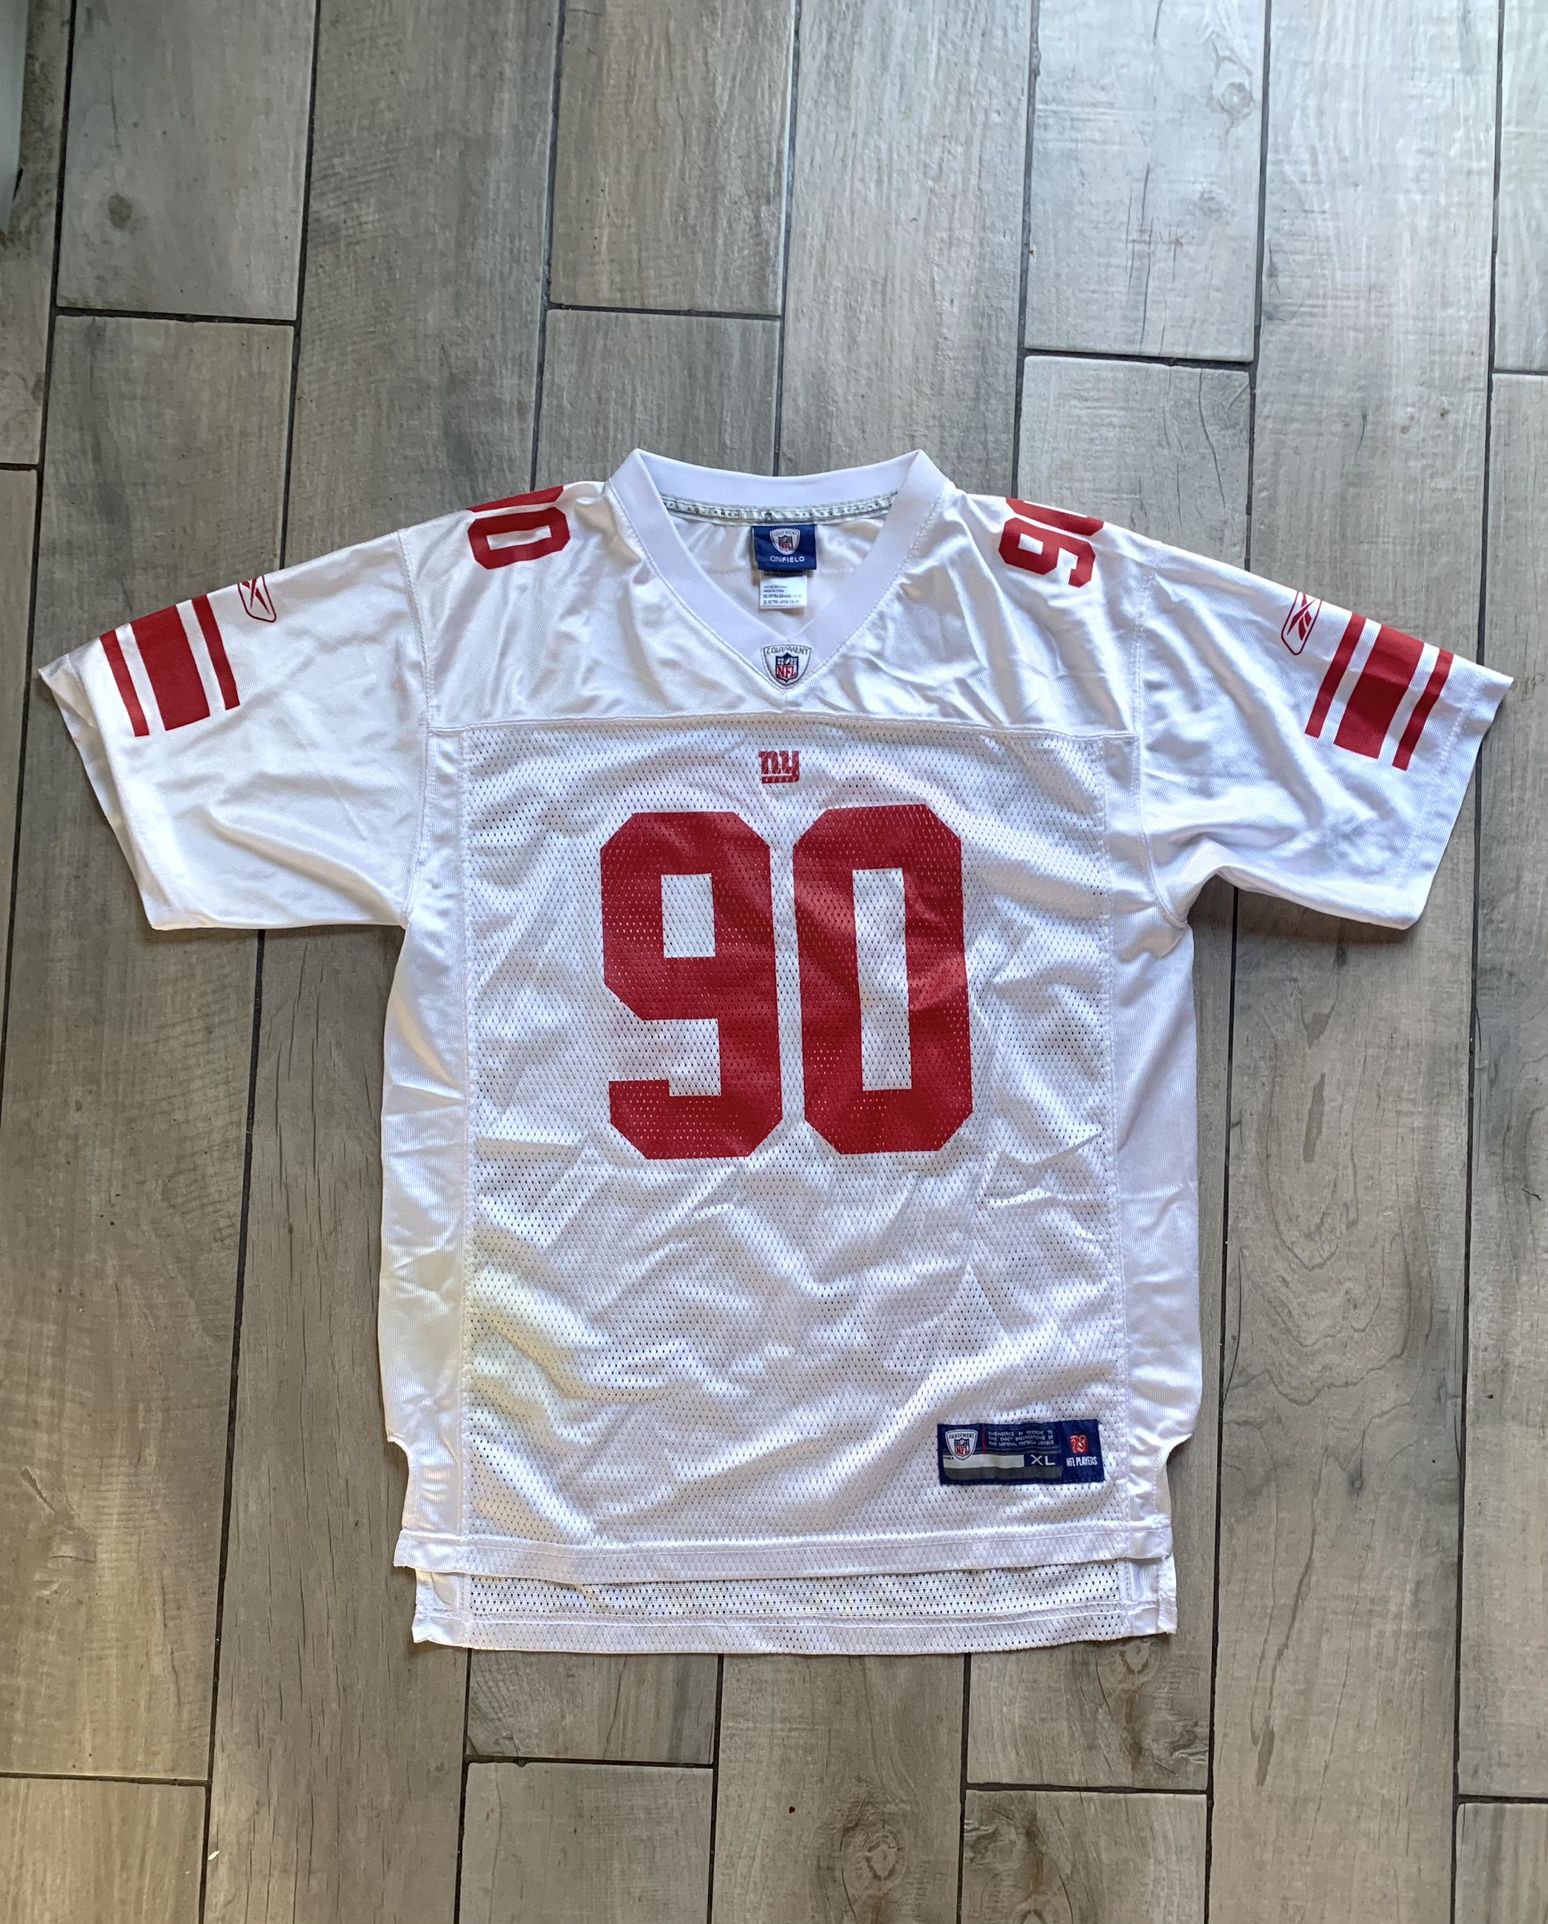 NY Giants (Pierre-Paul) #90 Reebok NFL jersey 